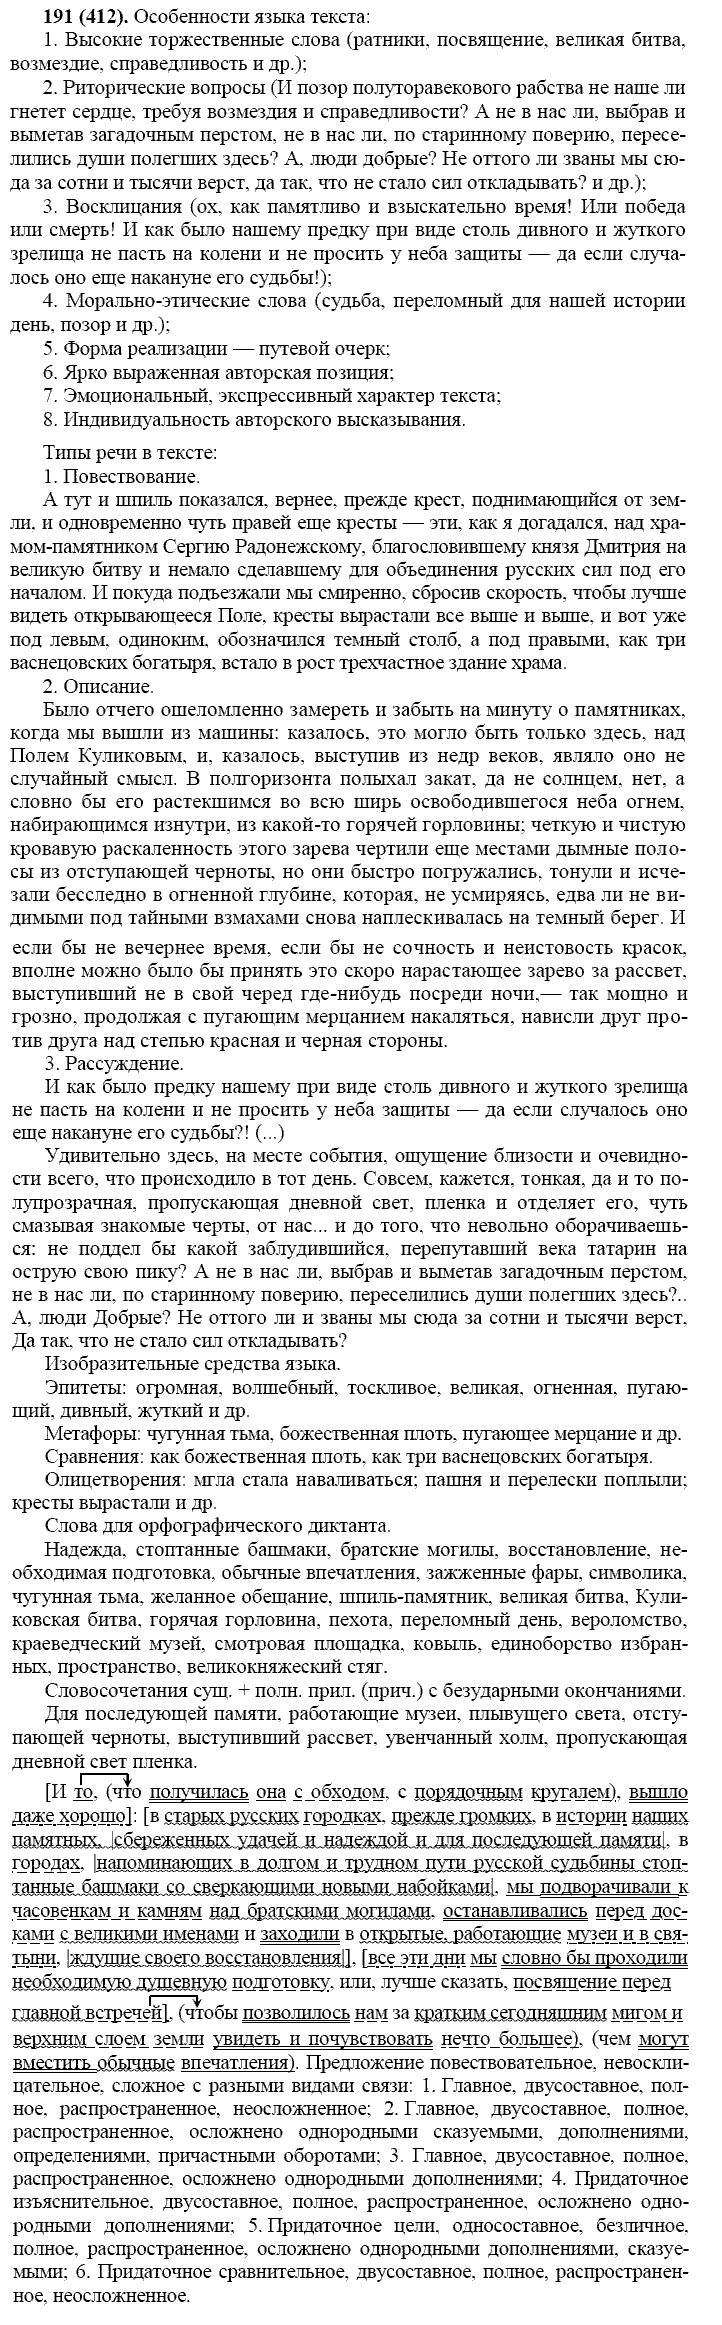 Русский язык, 11 класс, Власенков, Рыбченков, 2009-2014, задание: 191 (412)